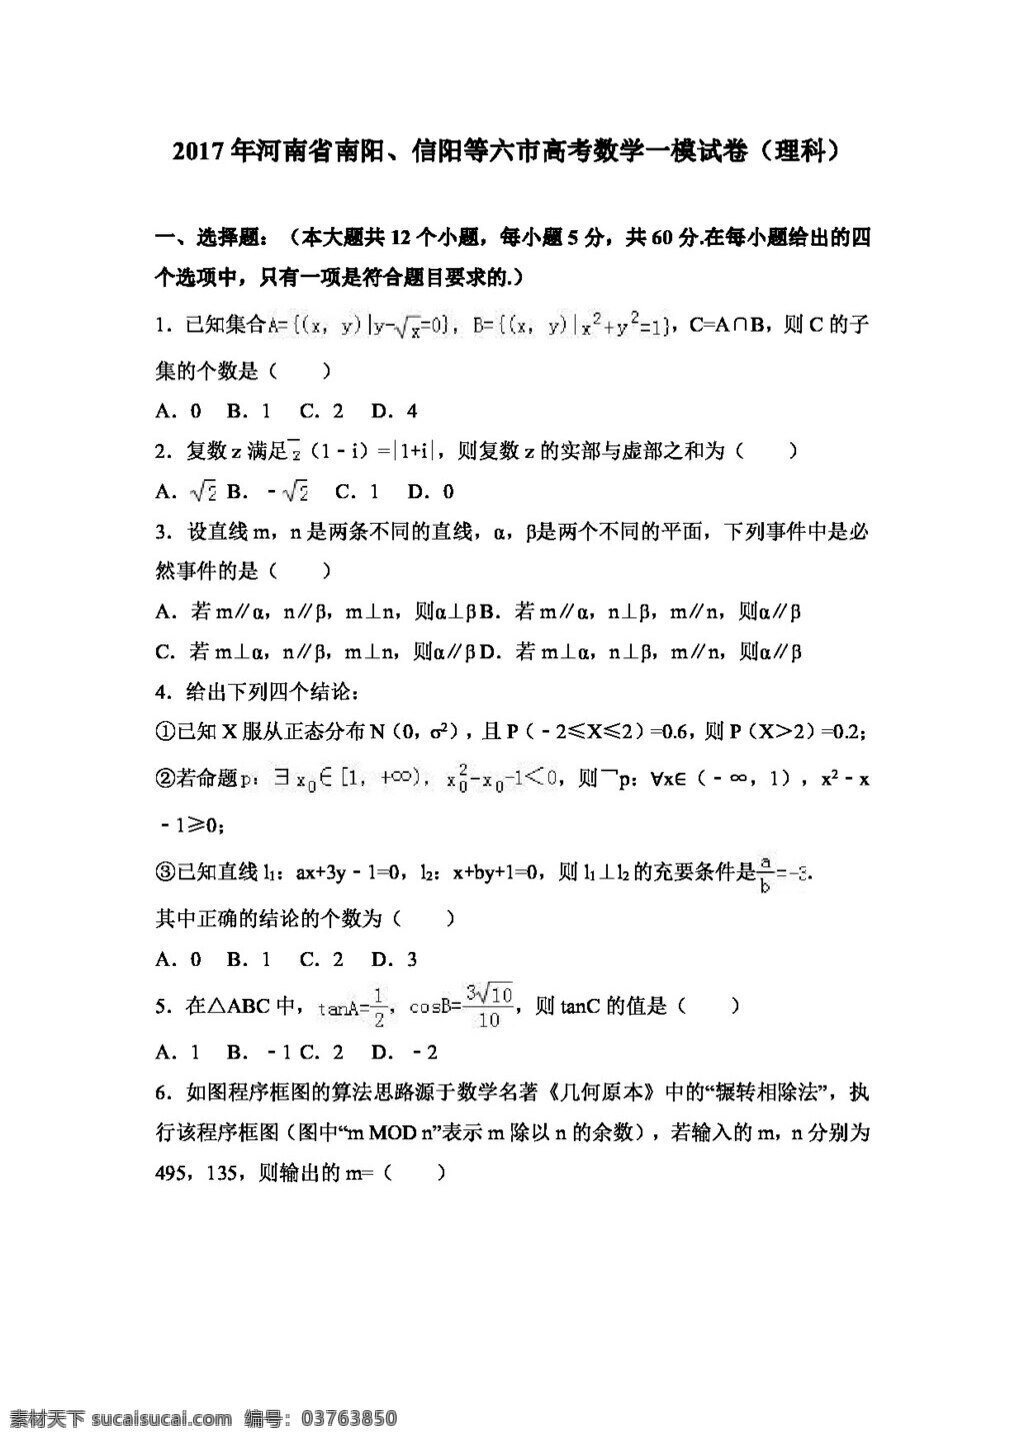 数学 人教 版 2017 年 河南省 南阳 信阳 六 市 高考 模 试卷 理科 高考专区 人教版